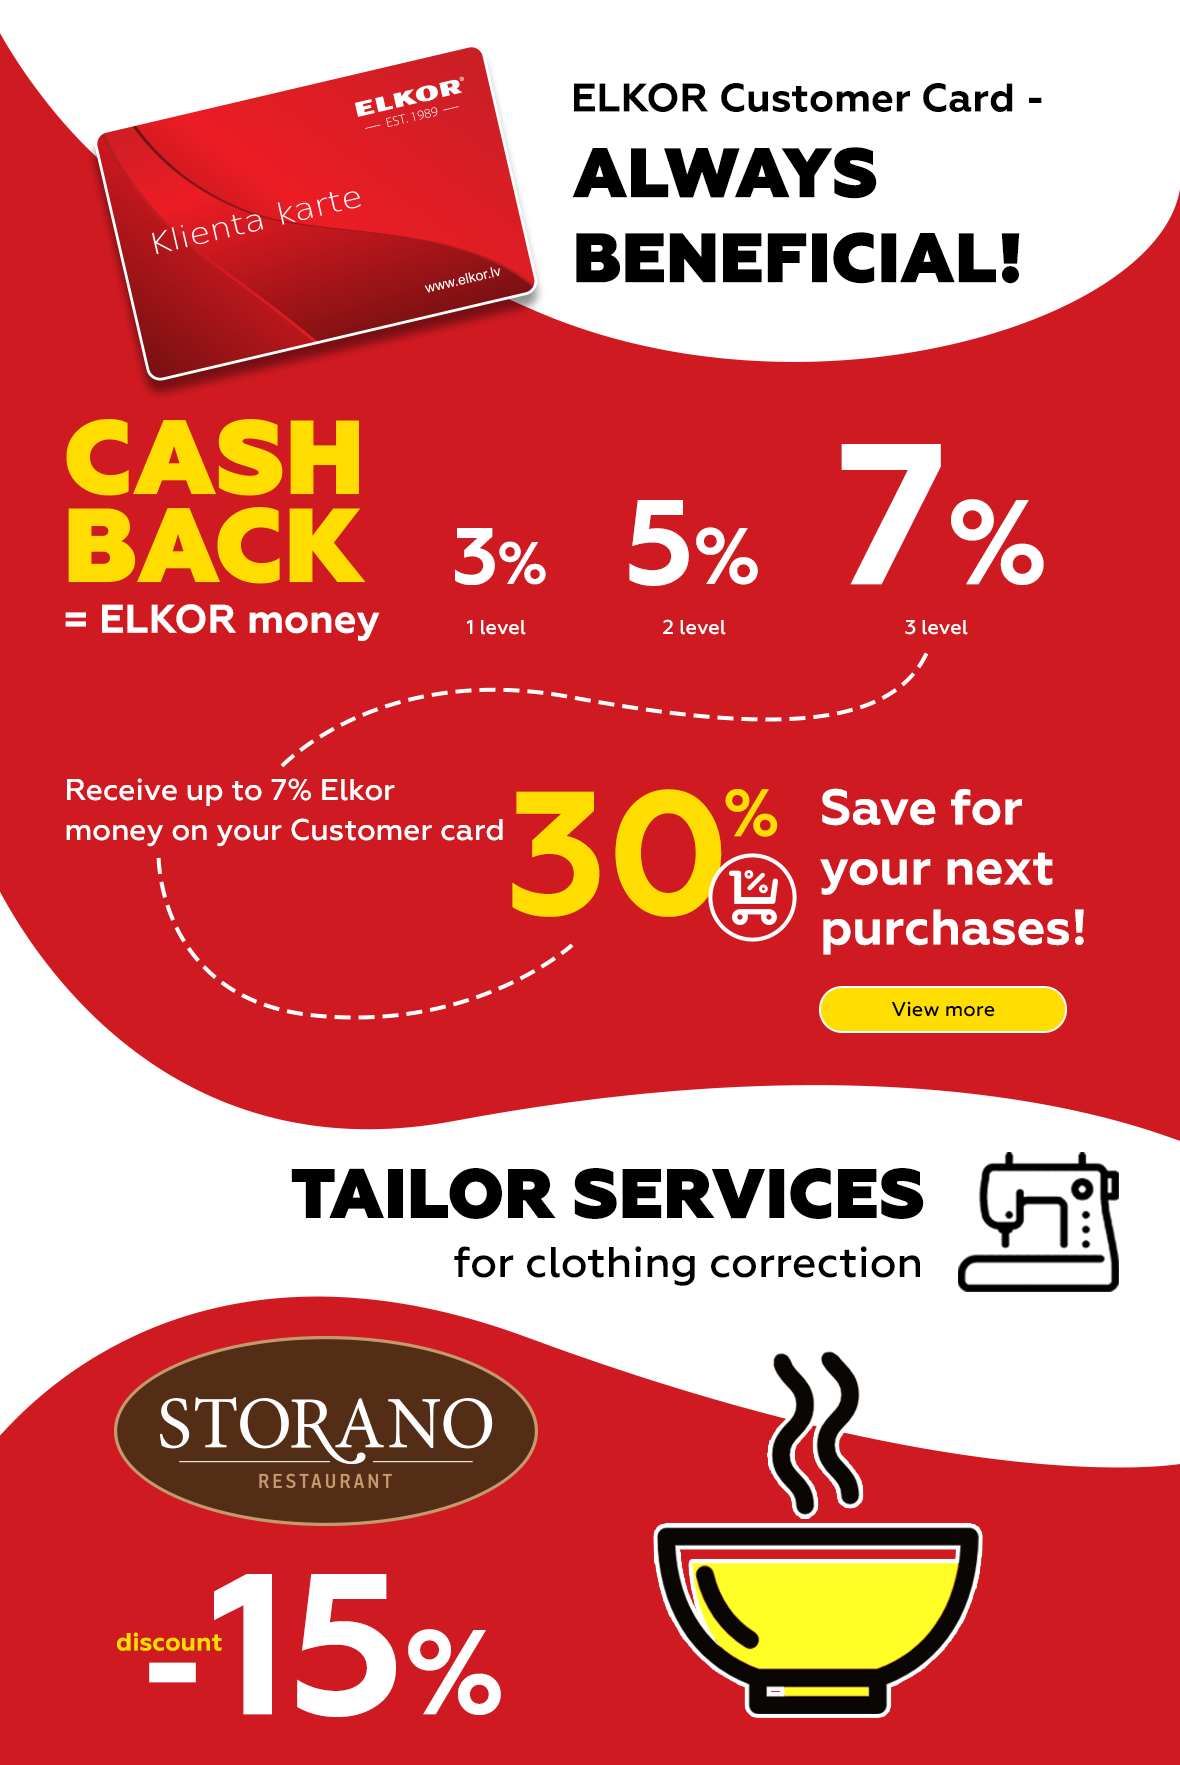 Elkor Customer card- always beneficial!